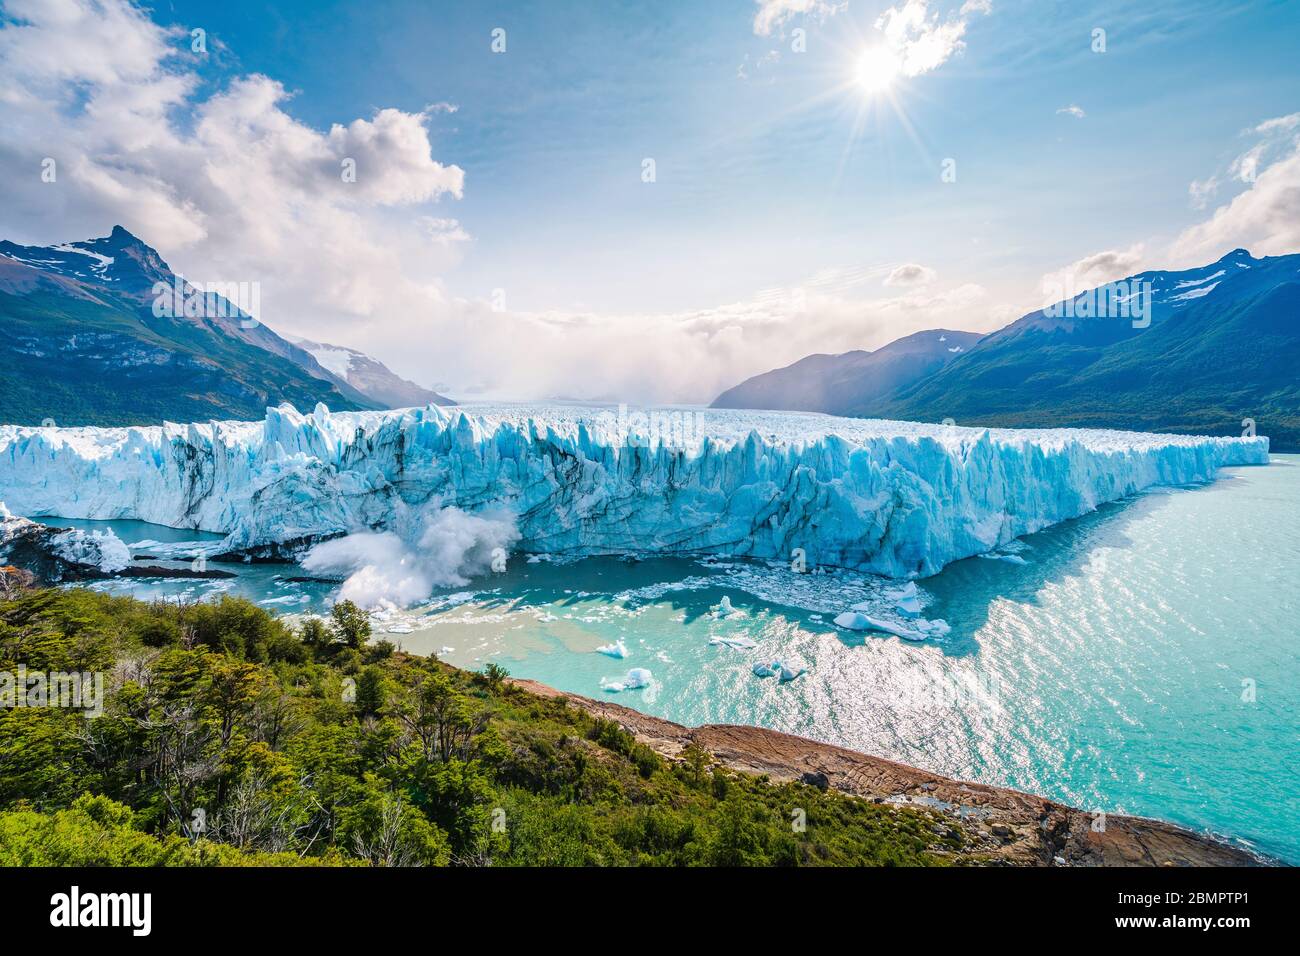 Eis bricht im Wasser am Perito Moreno Gletscher im Los Glaciares Nationalpark bei El Calafate, Patagonien Argentinien, Südamerika zusammen. Stockfoto